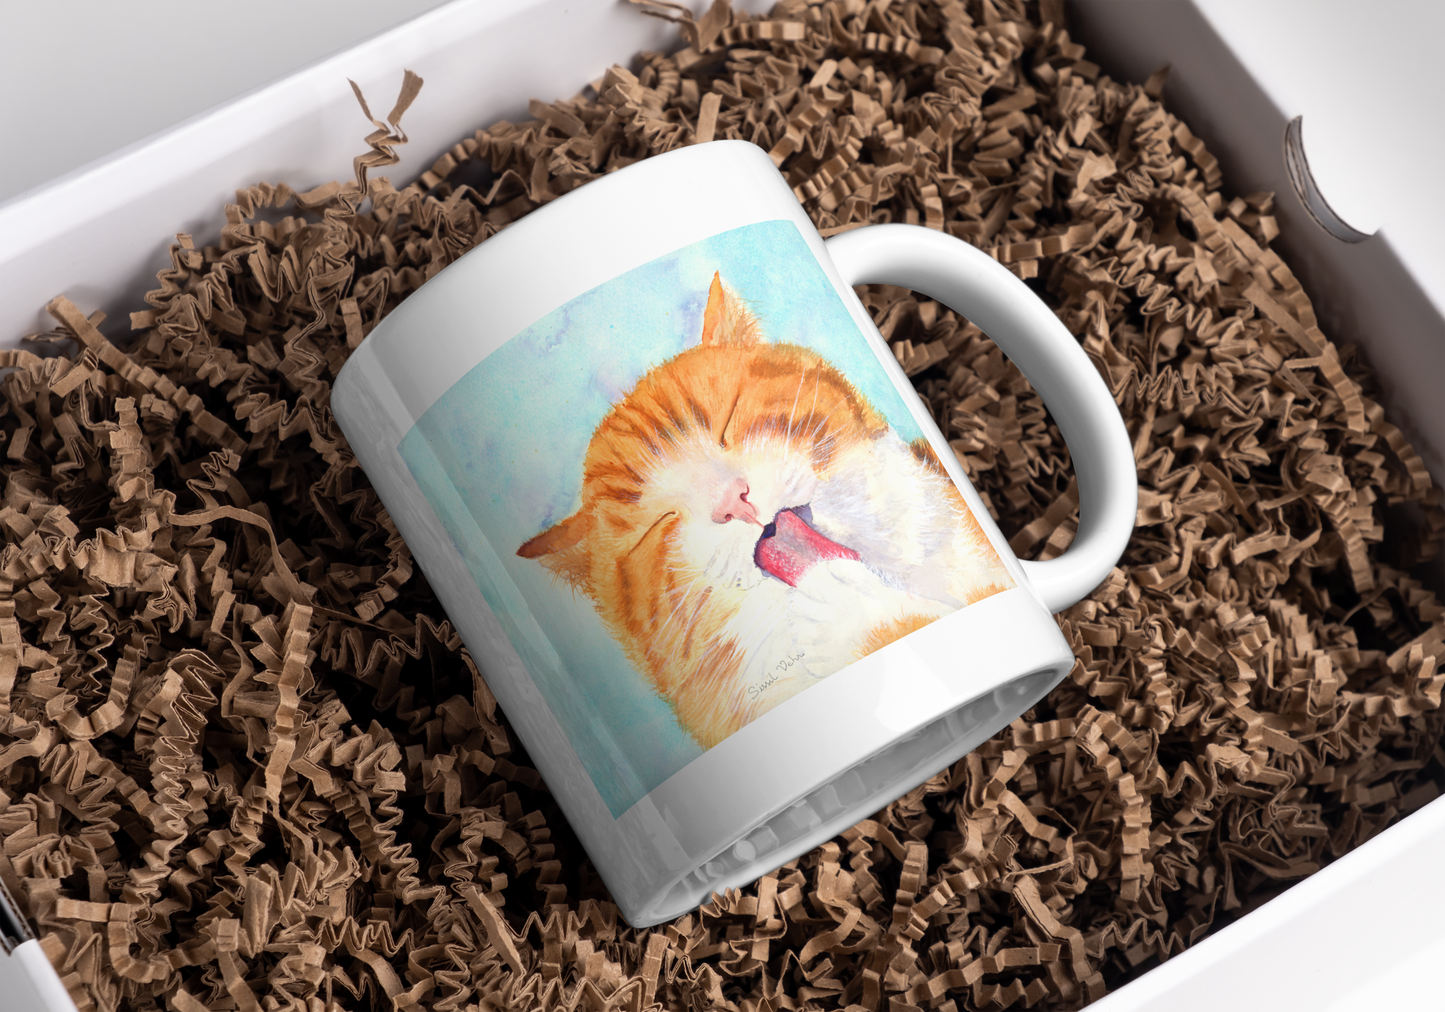 Mug Chat personnalisé | cadeau chat | chat roux| cadeau pour amoureux des chats